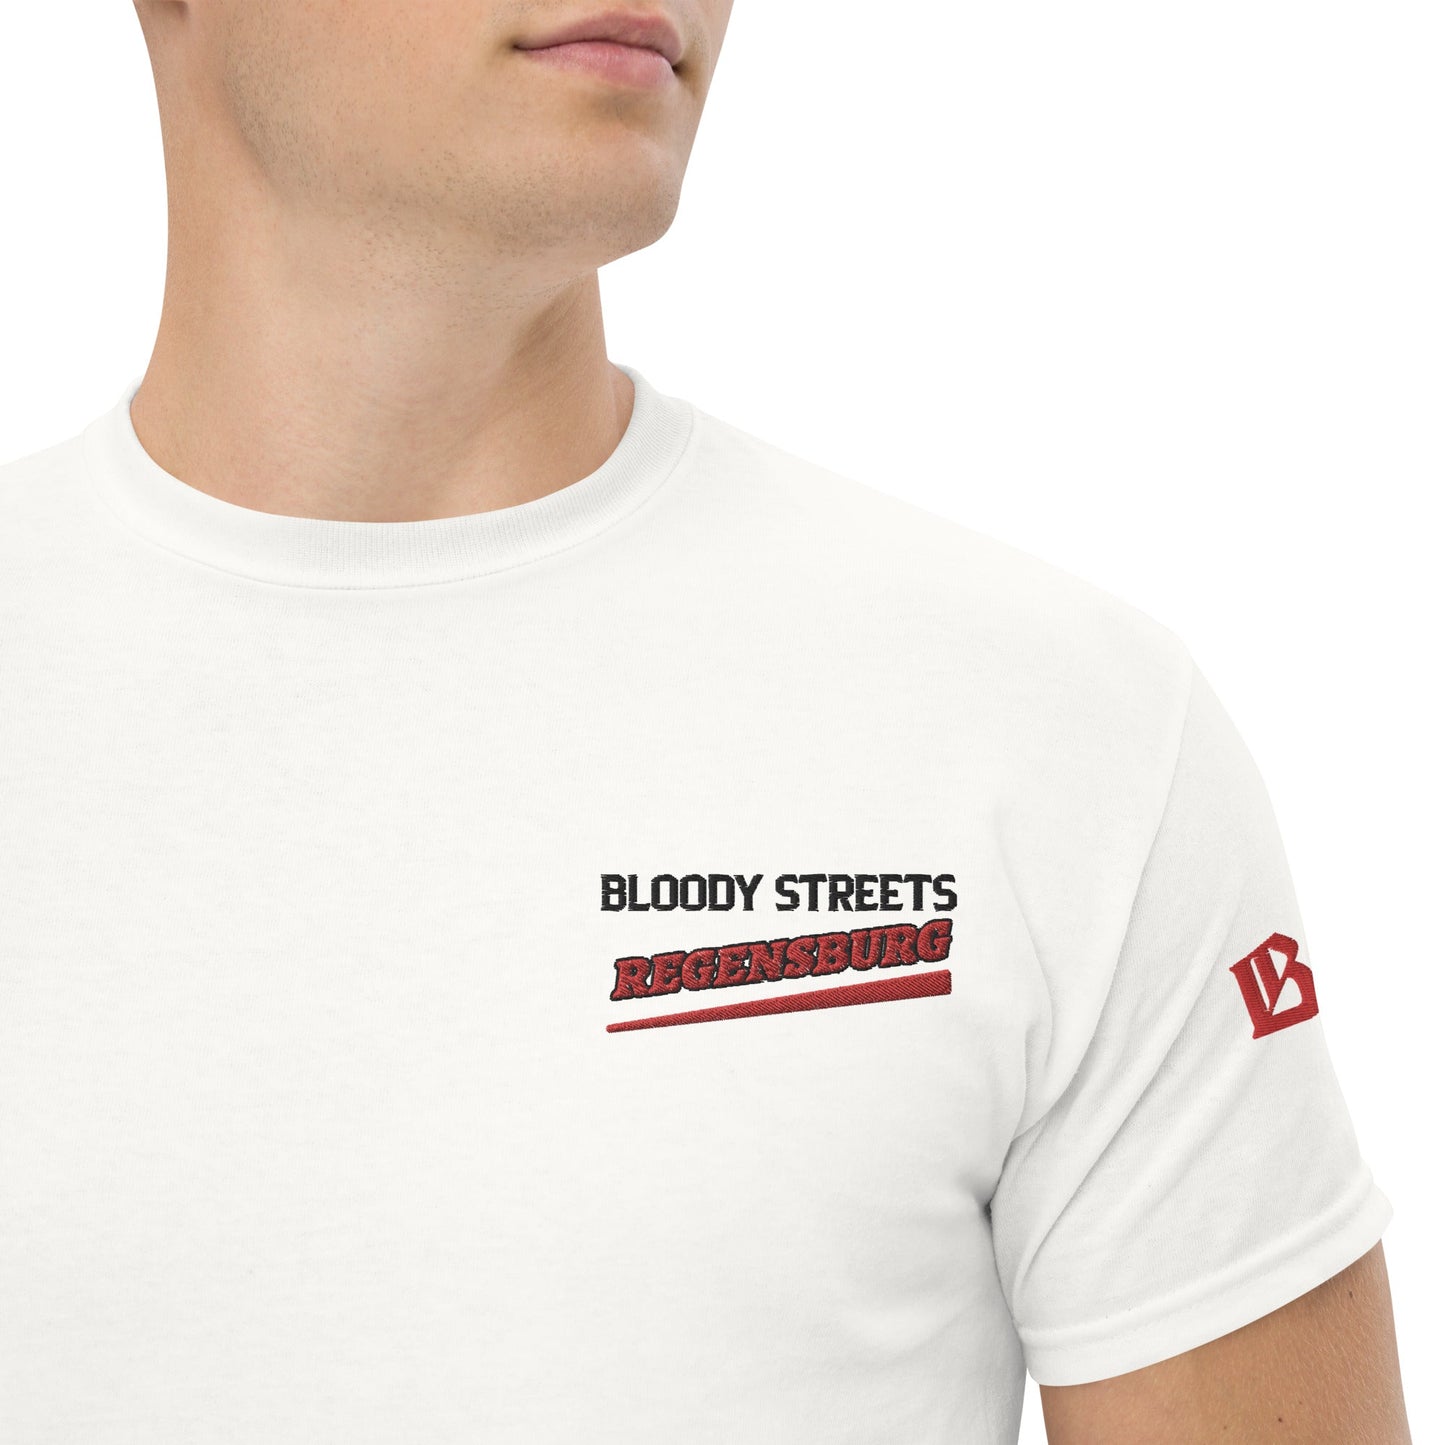 BS CITY Regensburg Crew Member Premium Red "G" T-Shirt - BLOODY-STREETS.DE Streetwear Herren und Damen Hoodies, T-Shirts, Pullis